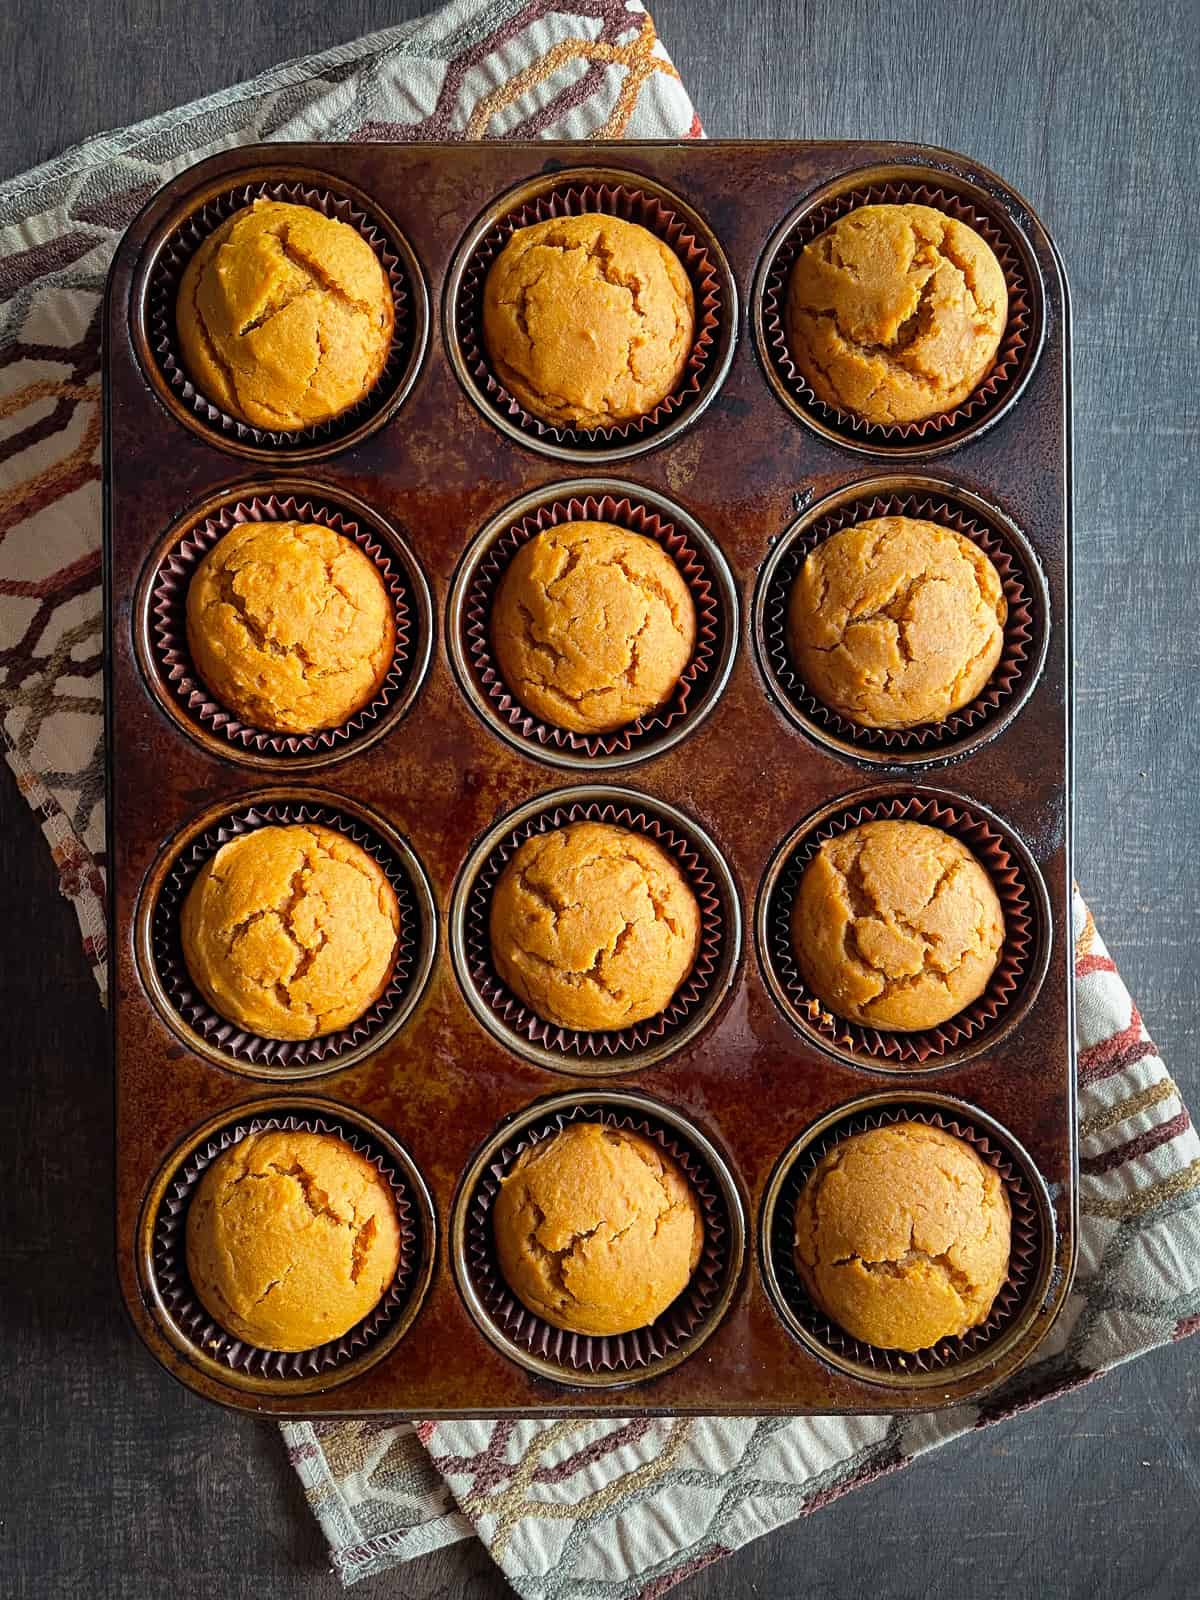 Gluten-free pumpkin muffins baked in a muffin pan.